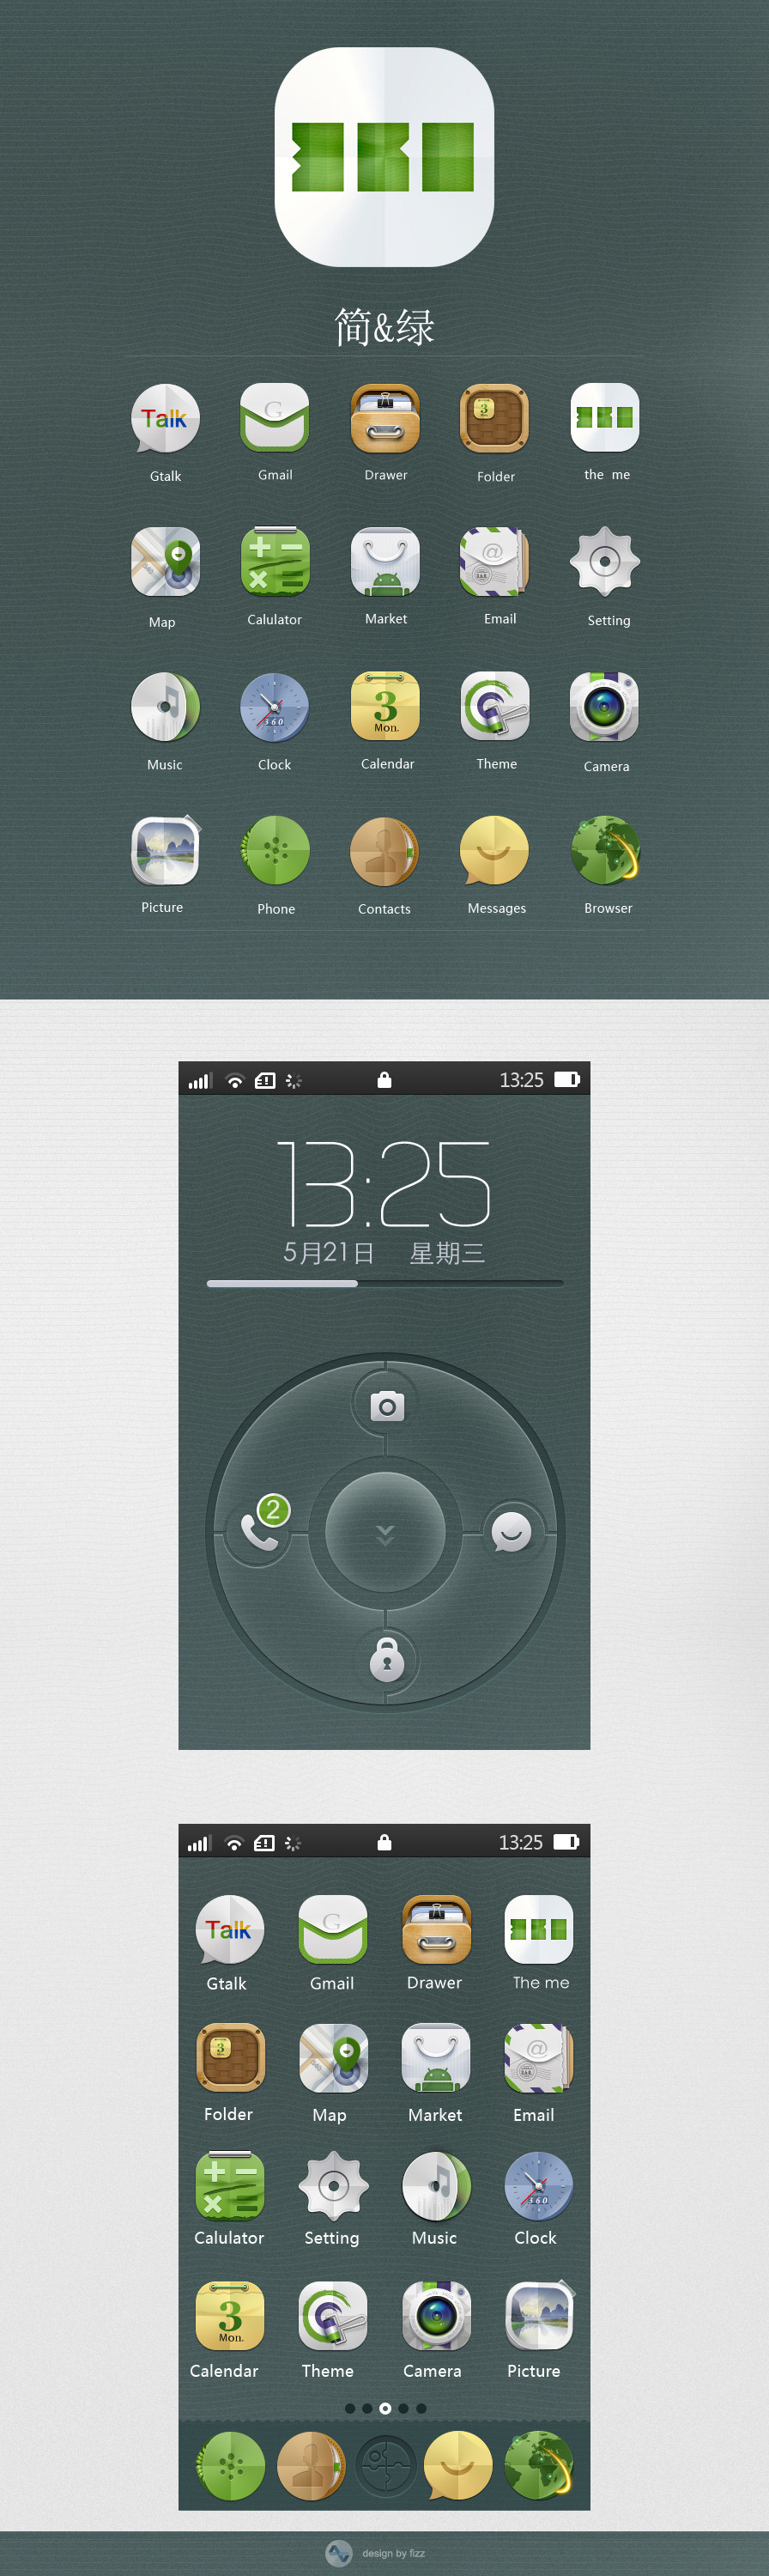 手机主题简&绿界面UI设计